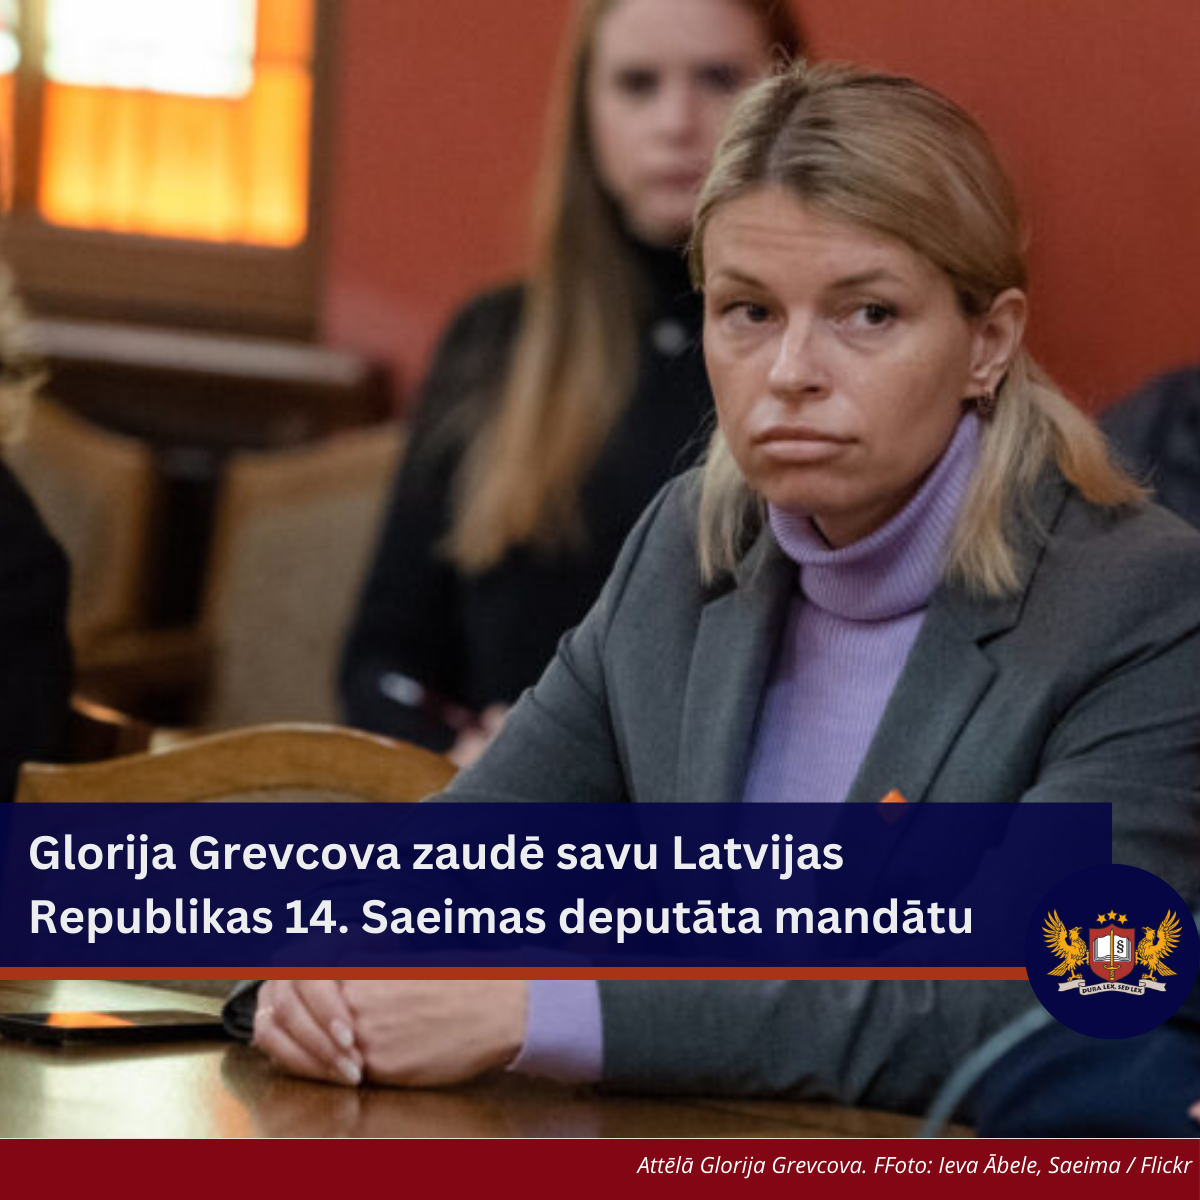 Attēls: Glorija Grevcova zaudē savu Latvijas Republikas 14. Saeimas deputāta mandātu